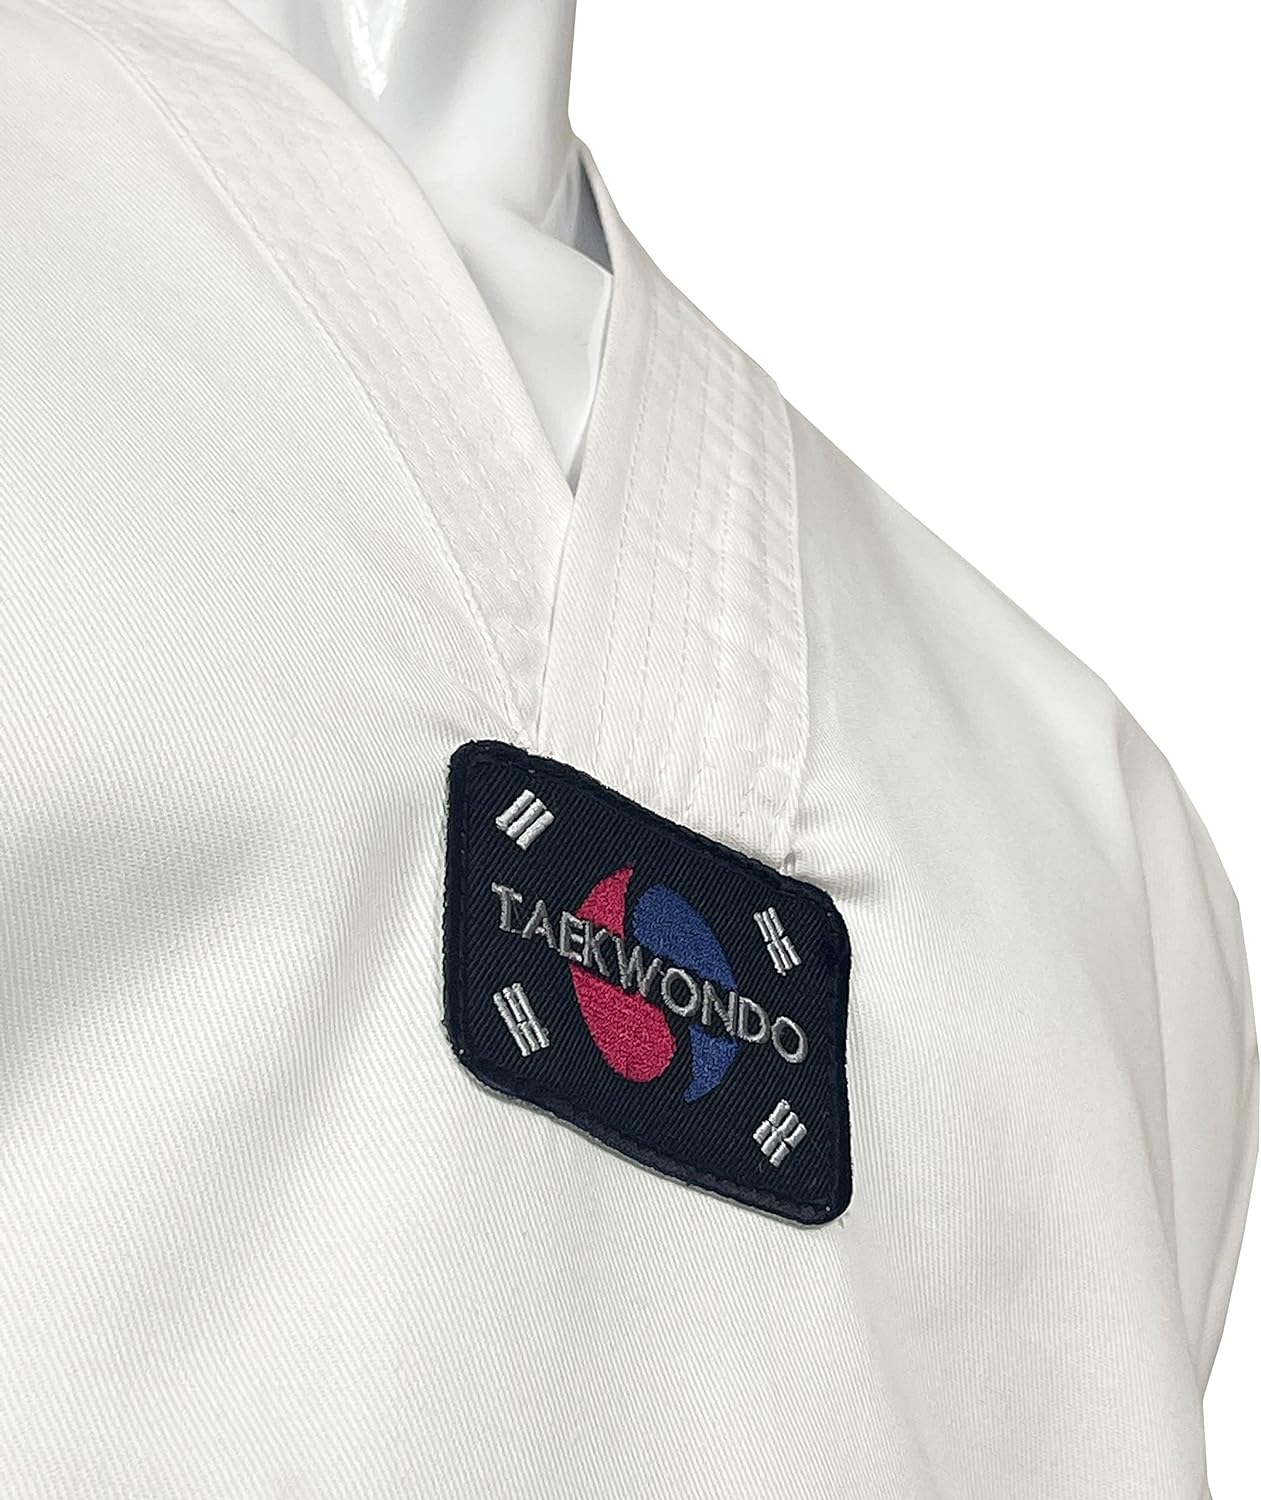 teka-taekwondo-gi-uniform-white-jacket | taekwondo-uniform